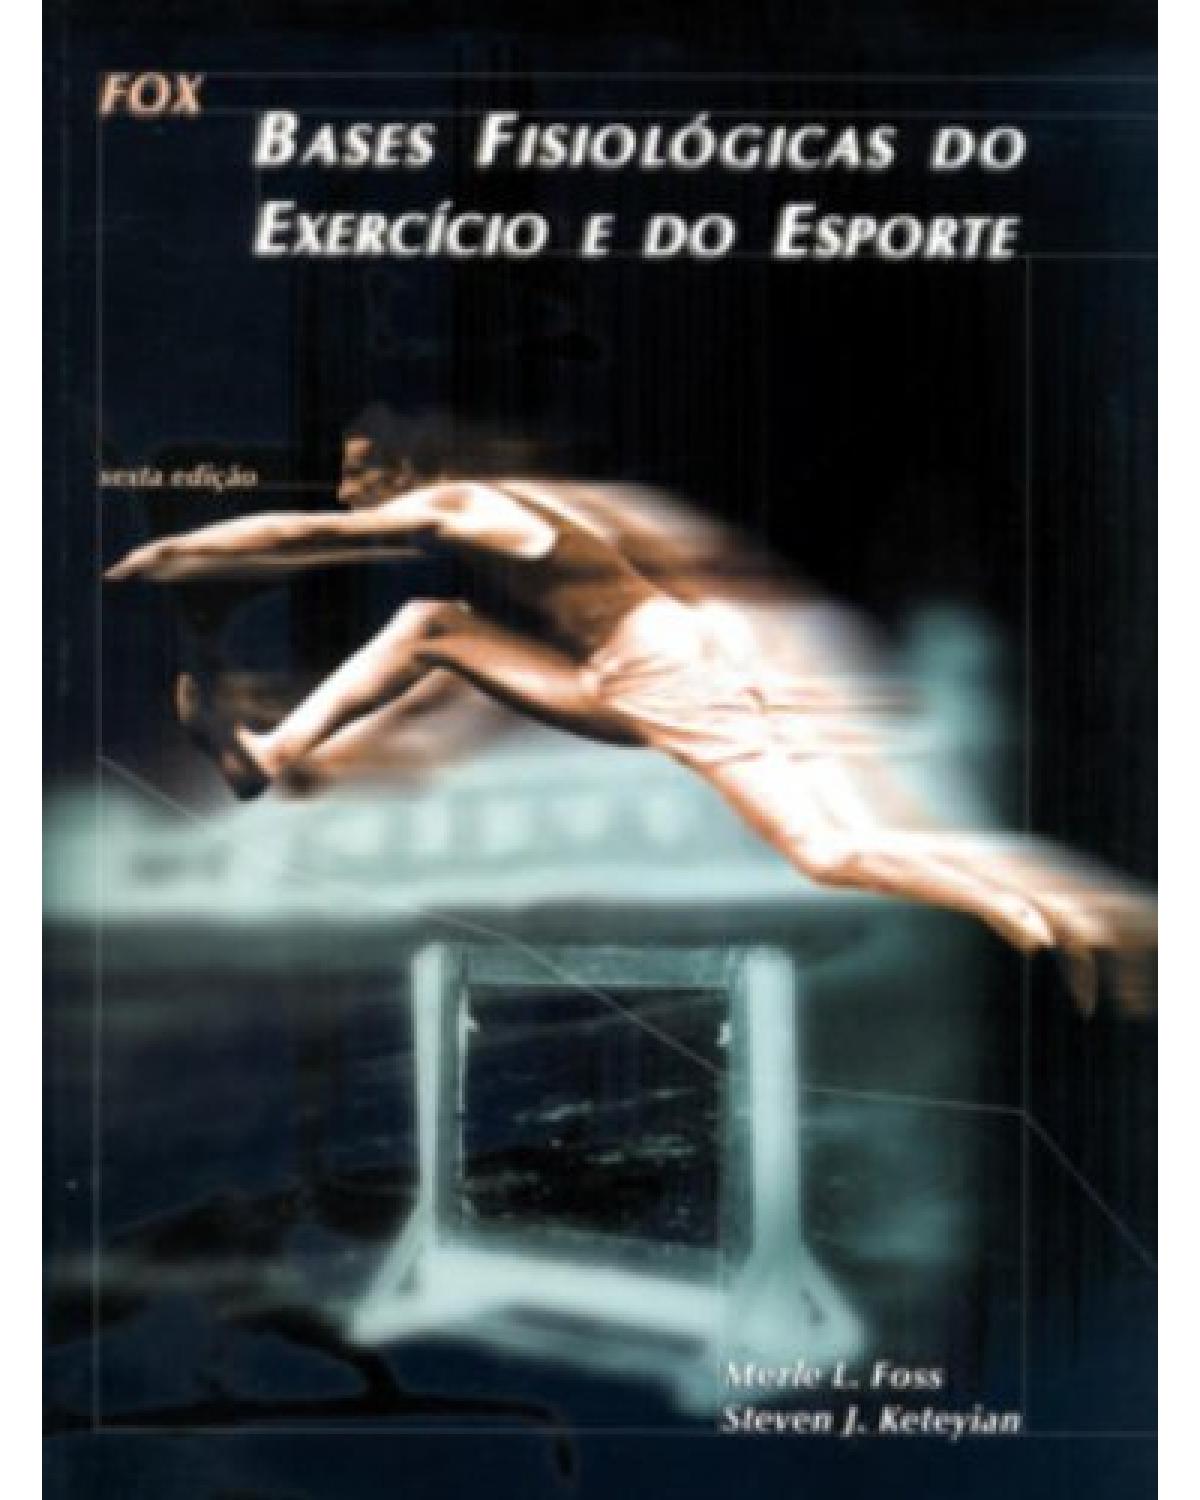 Fox - Bases fisiológicas do exercício e do esporte - 6ª Edição | 2000